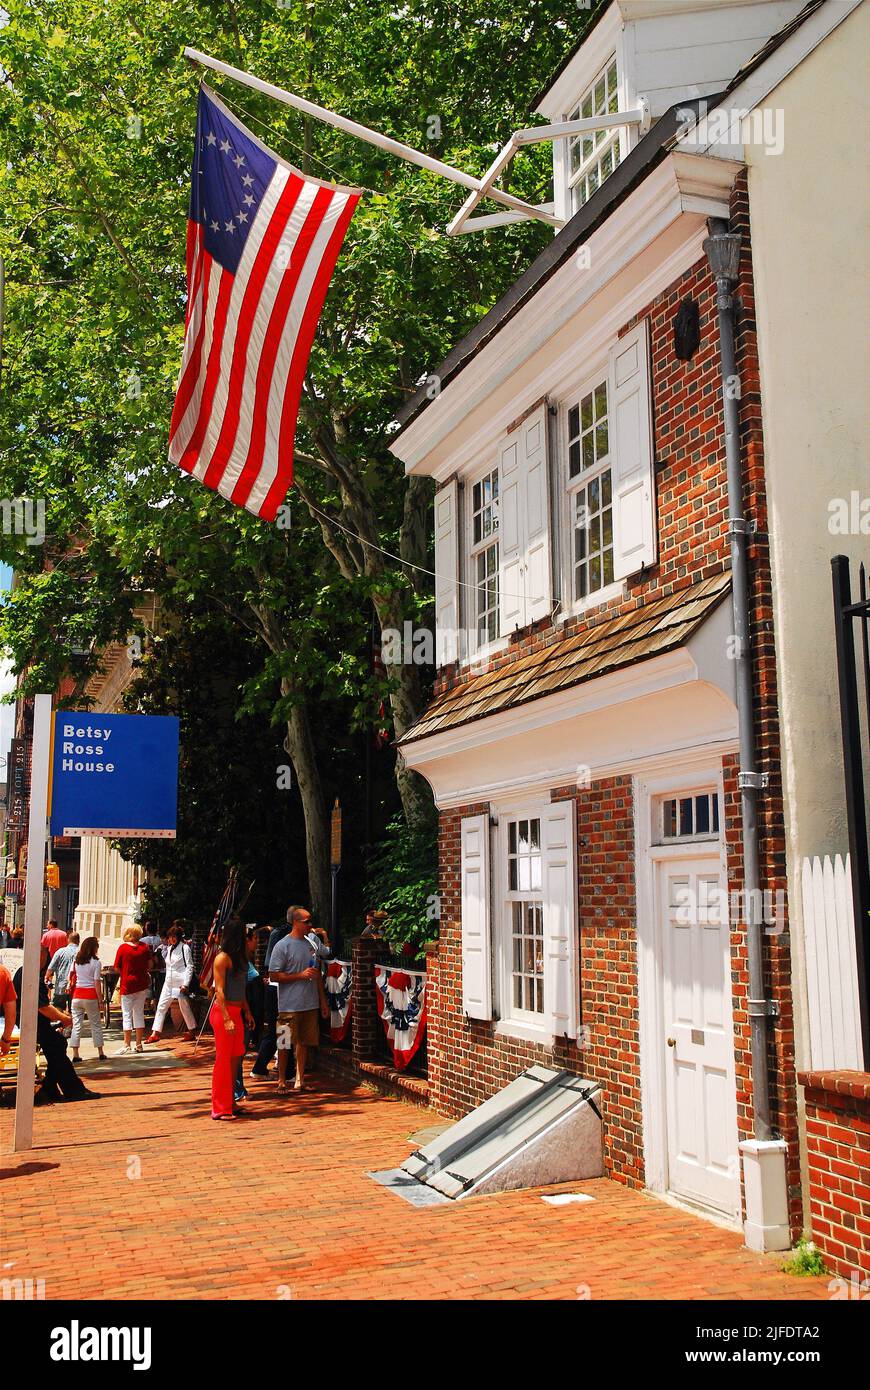 Das Betsy Ross House, ein historisches Backsteinhaus in Philadelphia, soll die Heimat der Näherin sein, die, so die Legende, die erste amerikanische Flagge genäht hat Stockfoto